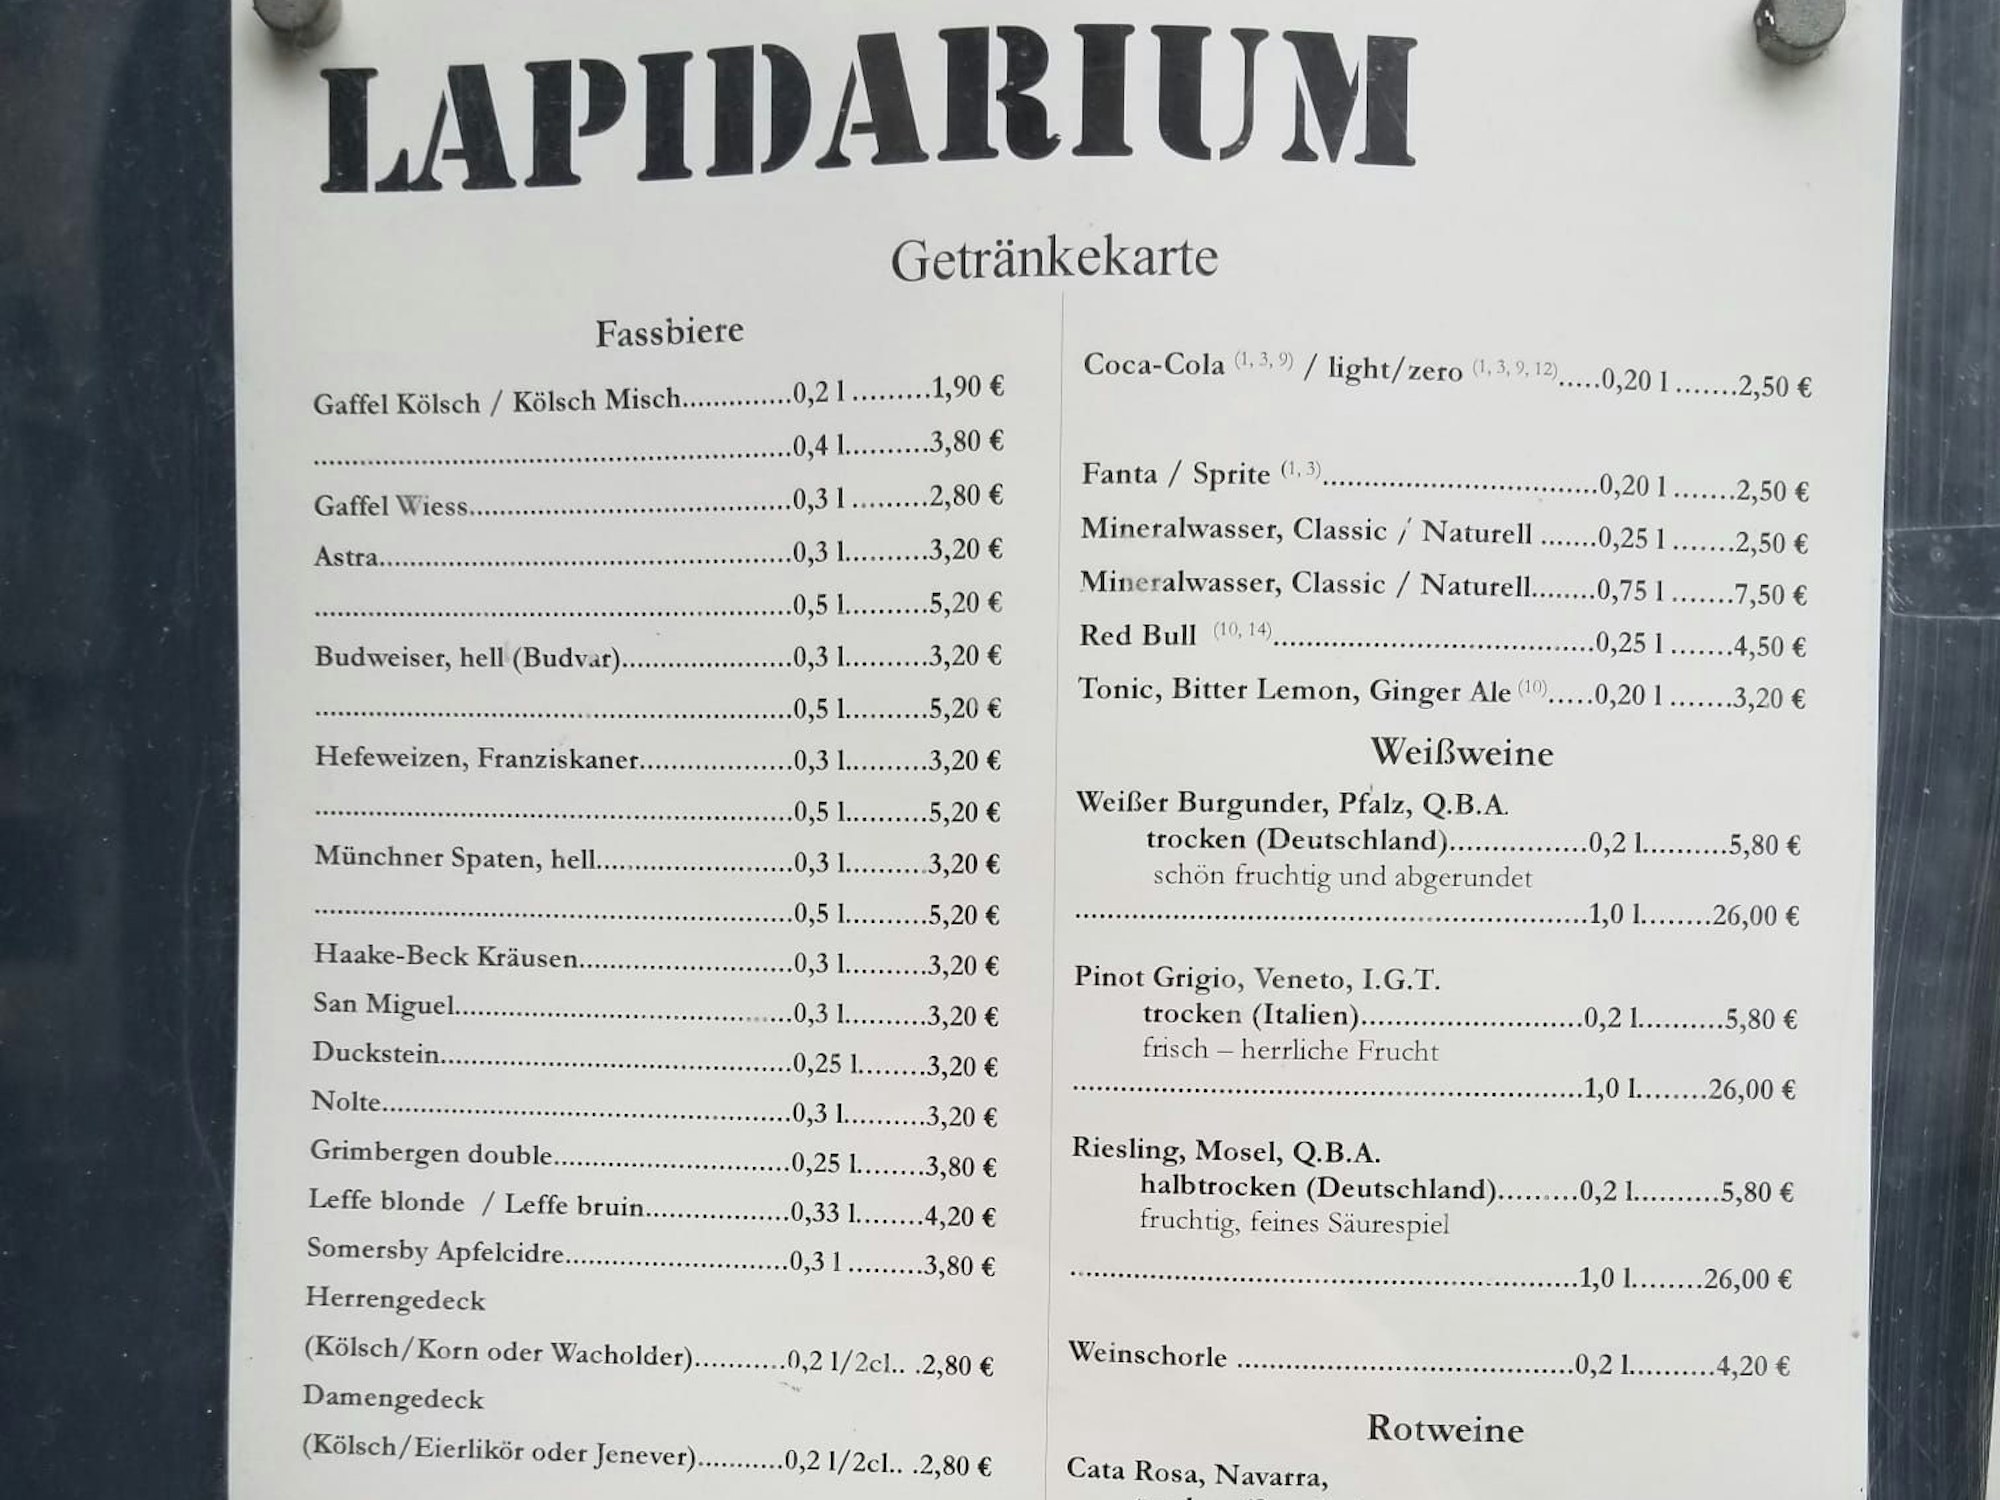 Die Getränkekarte im Lapidarium